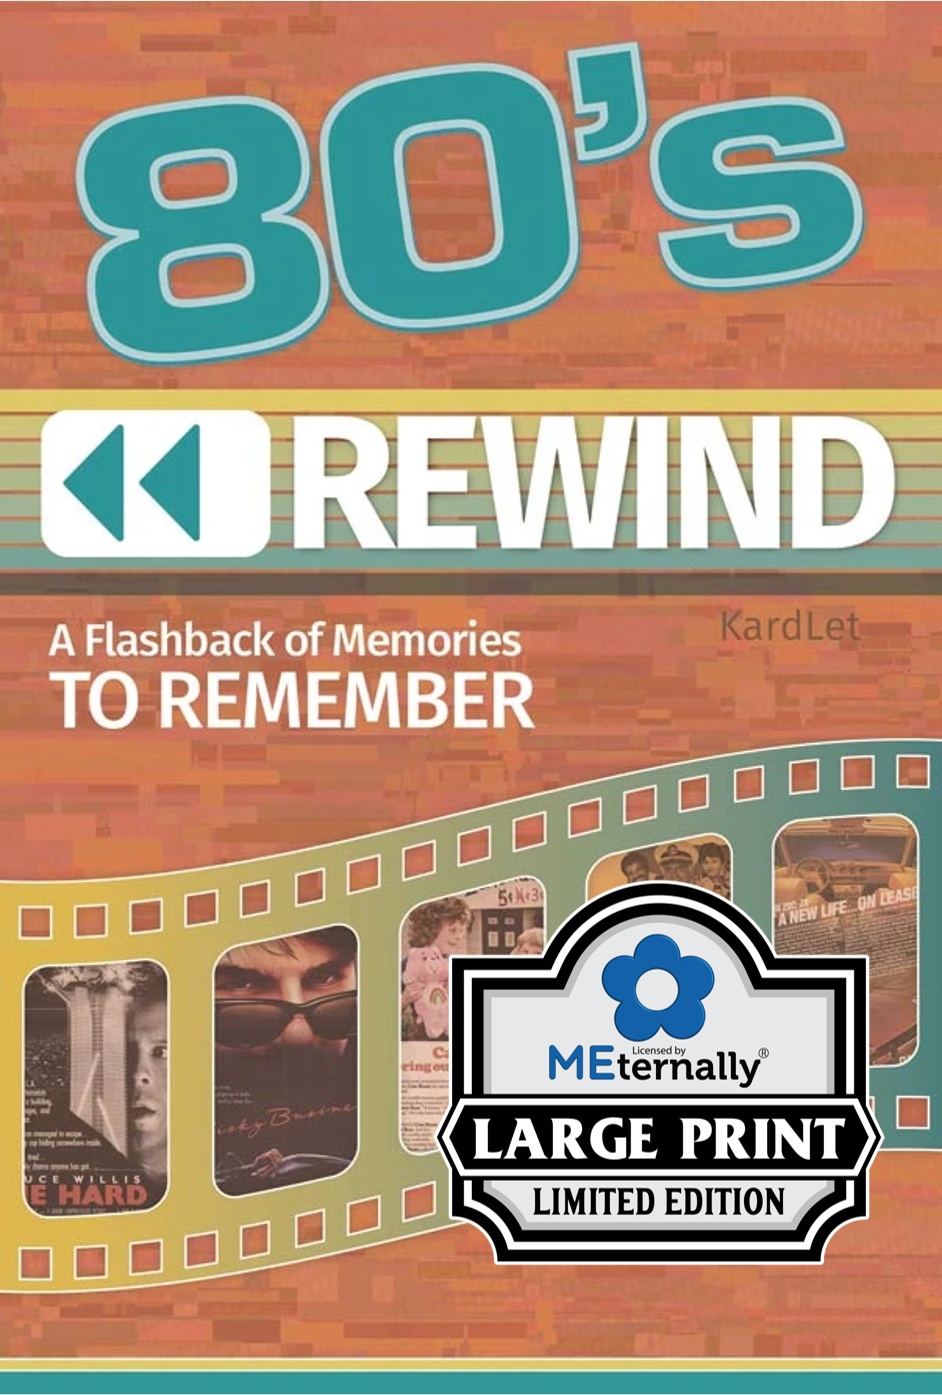 1980s Rewind Decade Kardlet